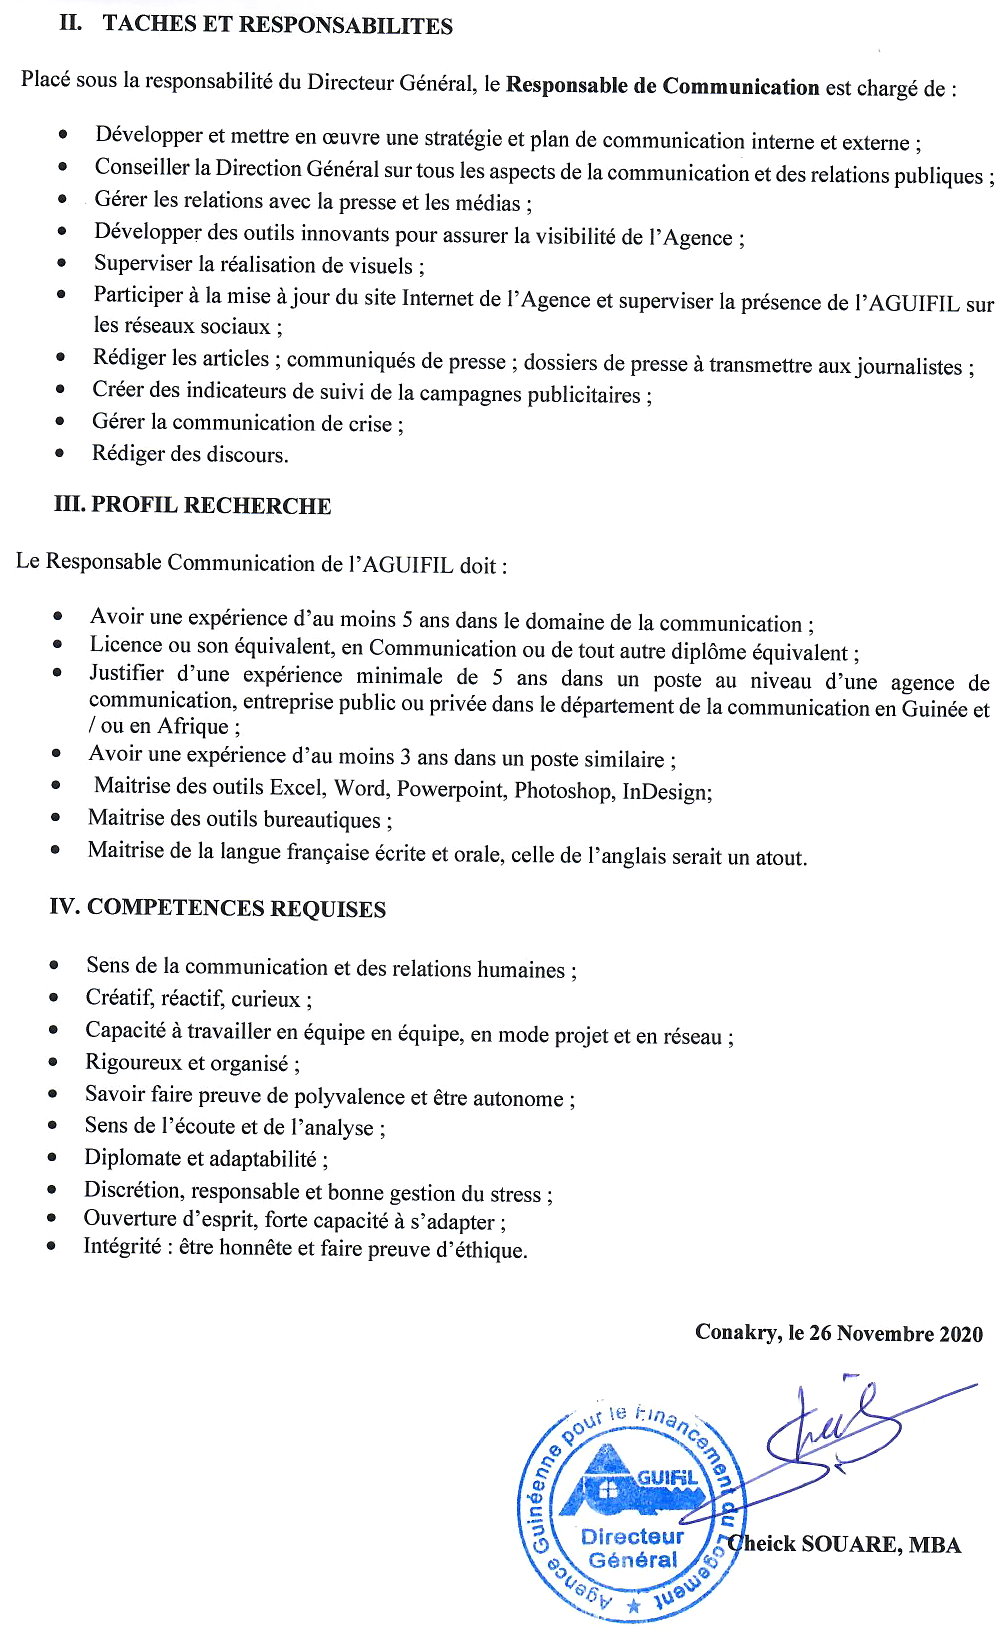 Recrutement en guinée - Aguifil p.2